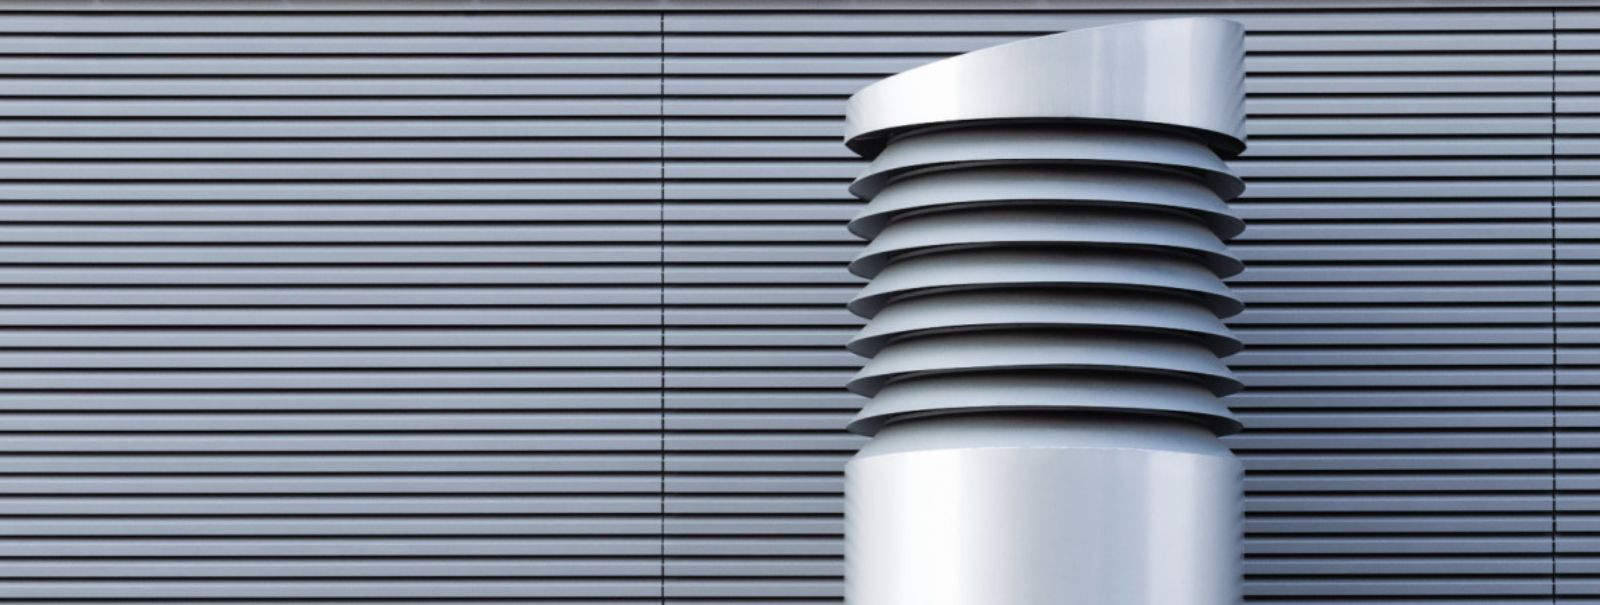 Valesti seadistatud ventilatsioonisüsteem võib tegelikult tarbida palju elektrit, sest see võib töötada rohkem, kui see peaks. See võib tähendada, et ventilatsi